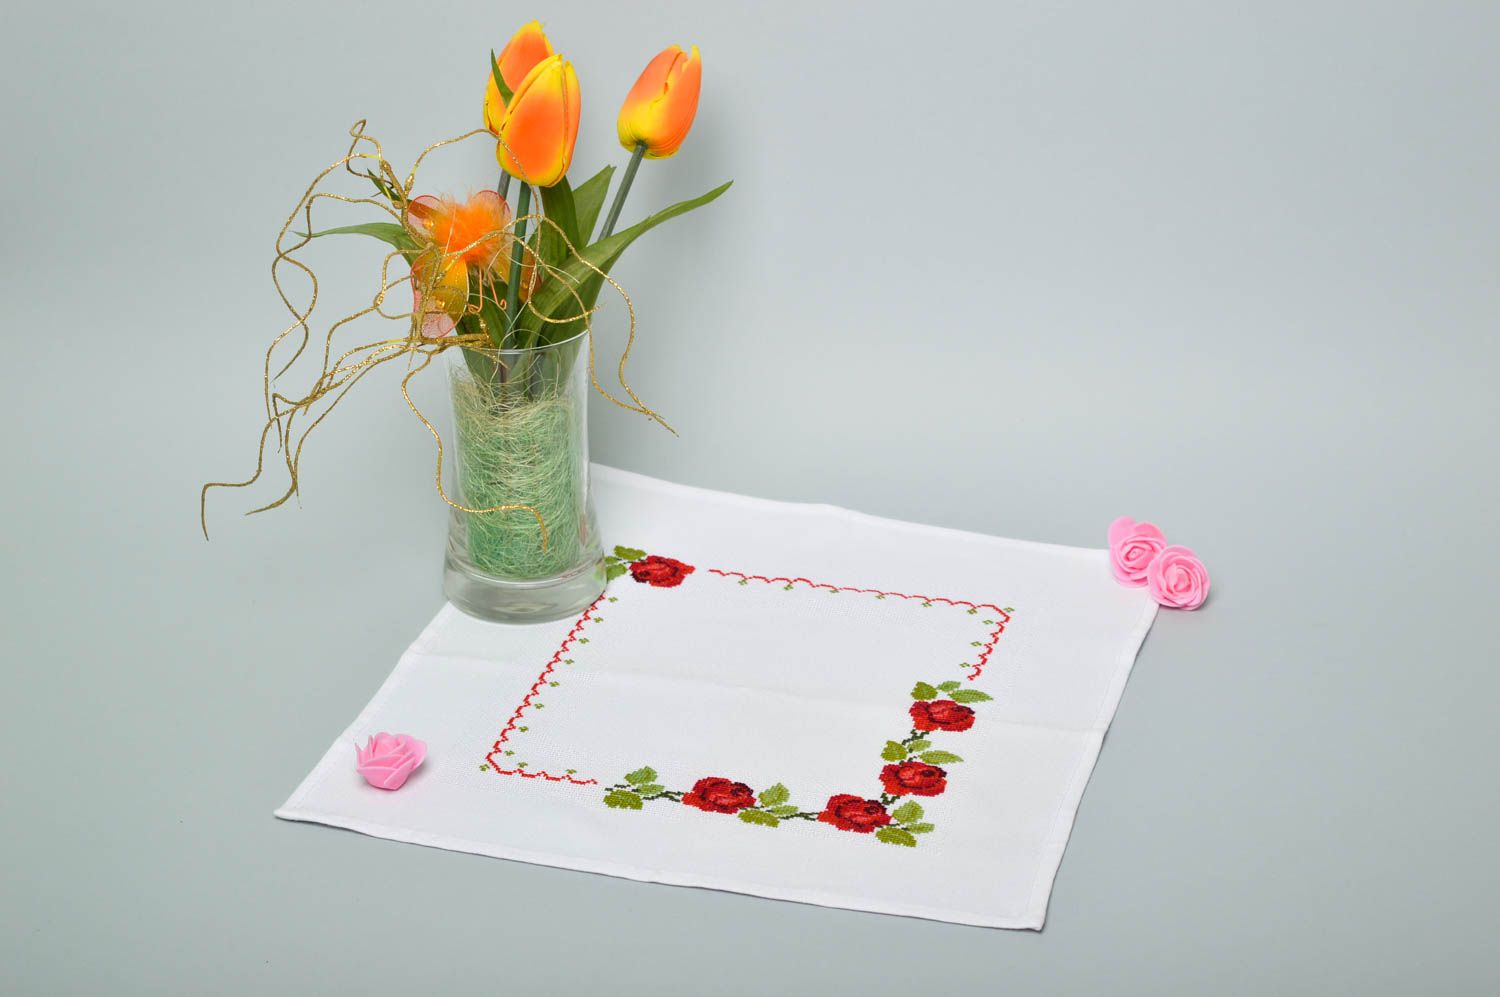 Handmade cute unusual napkin table decor ideas beautiful embroidered napkin photo 1